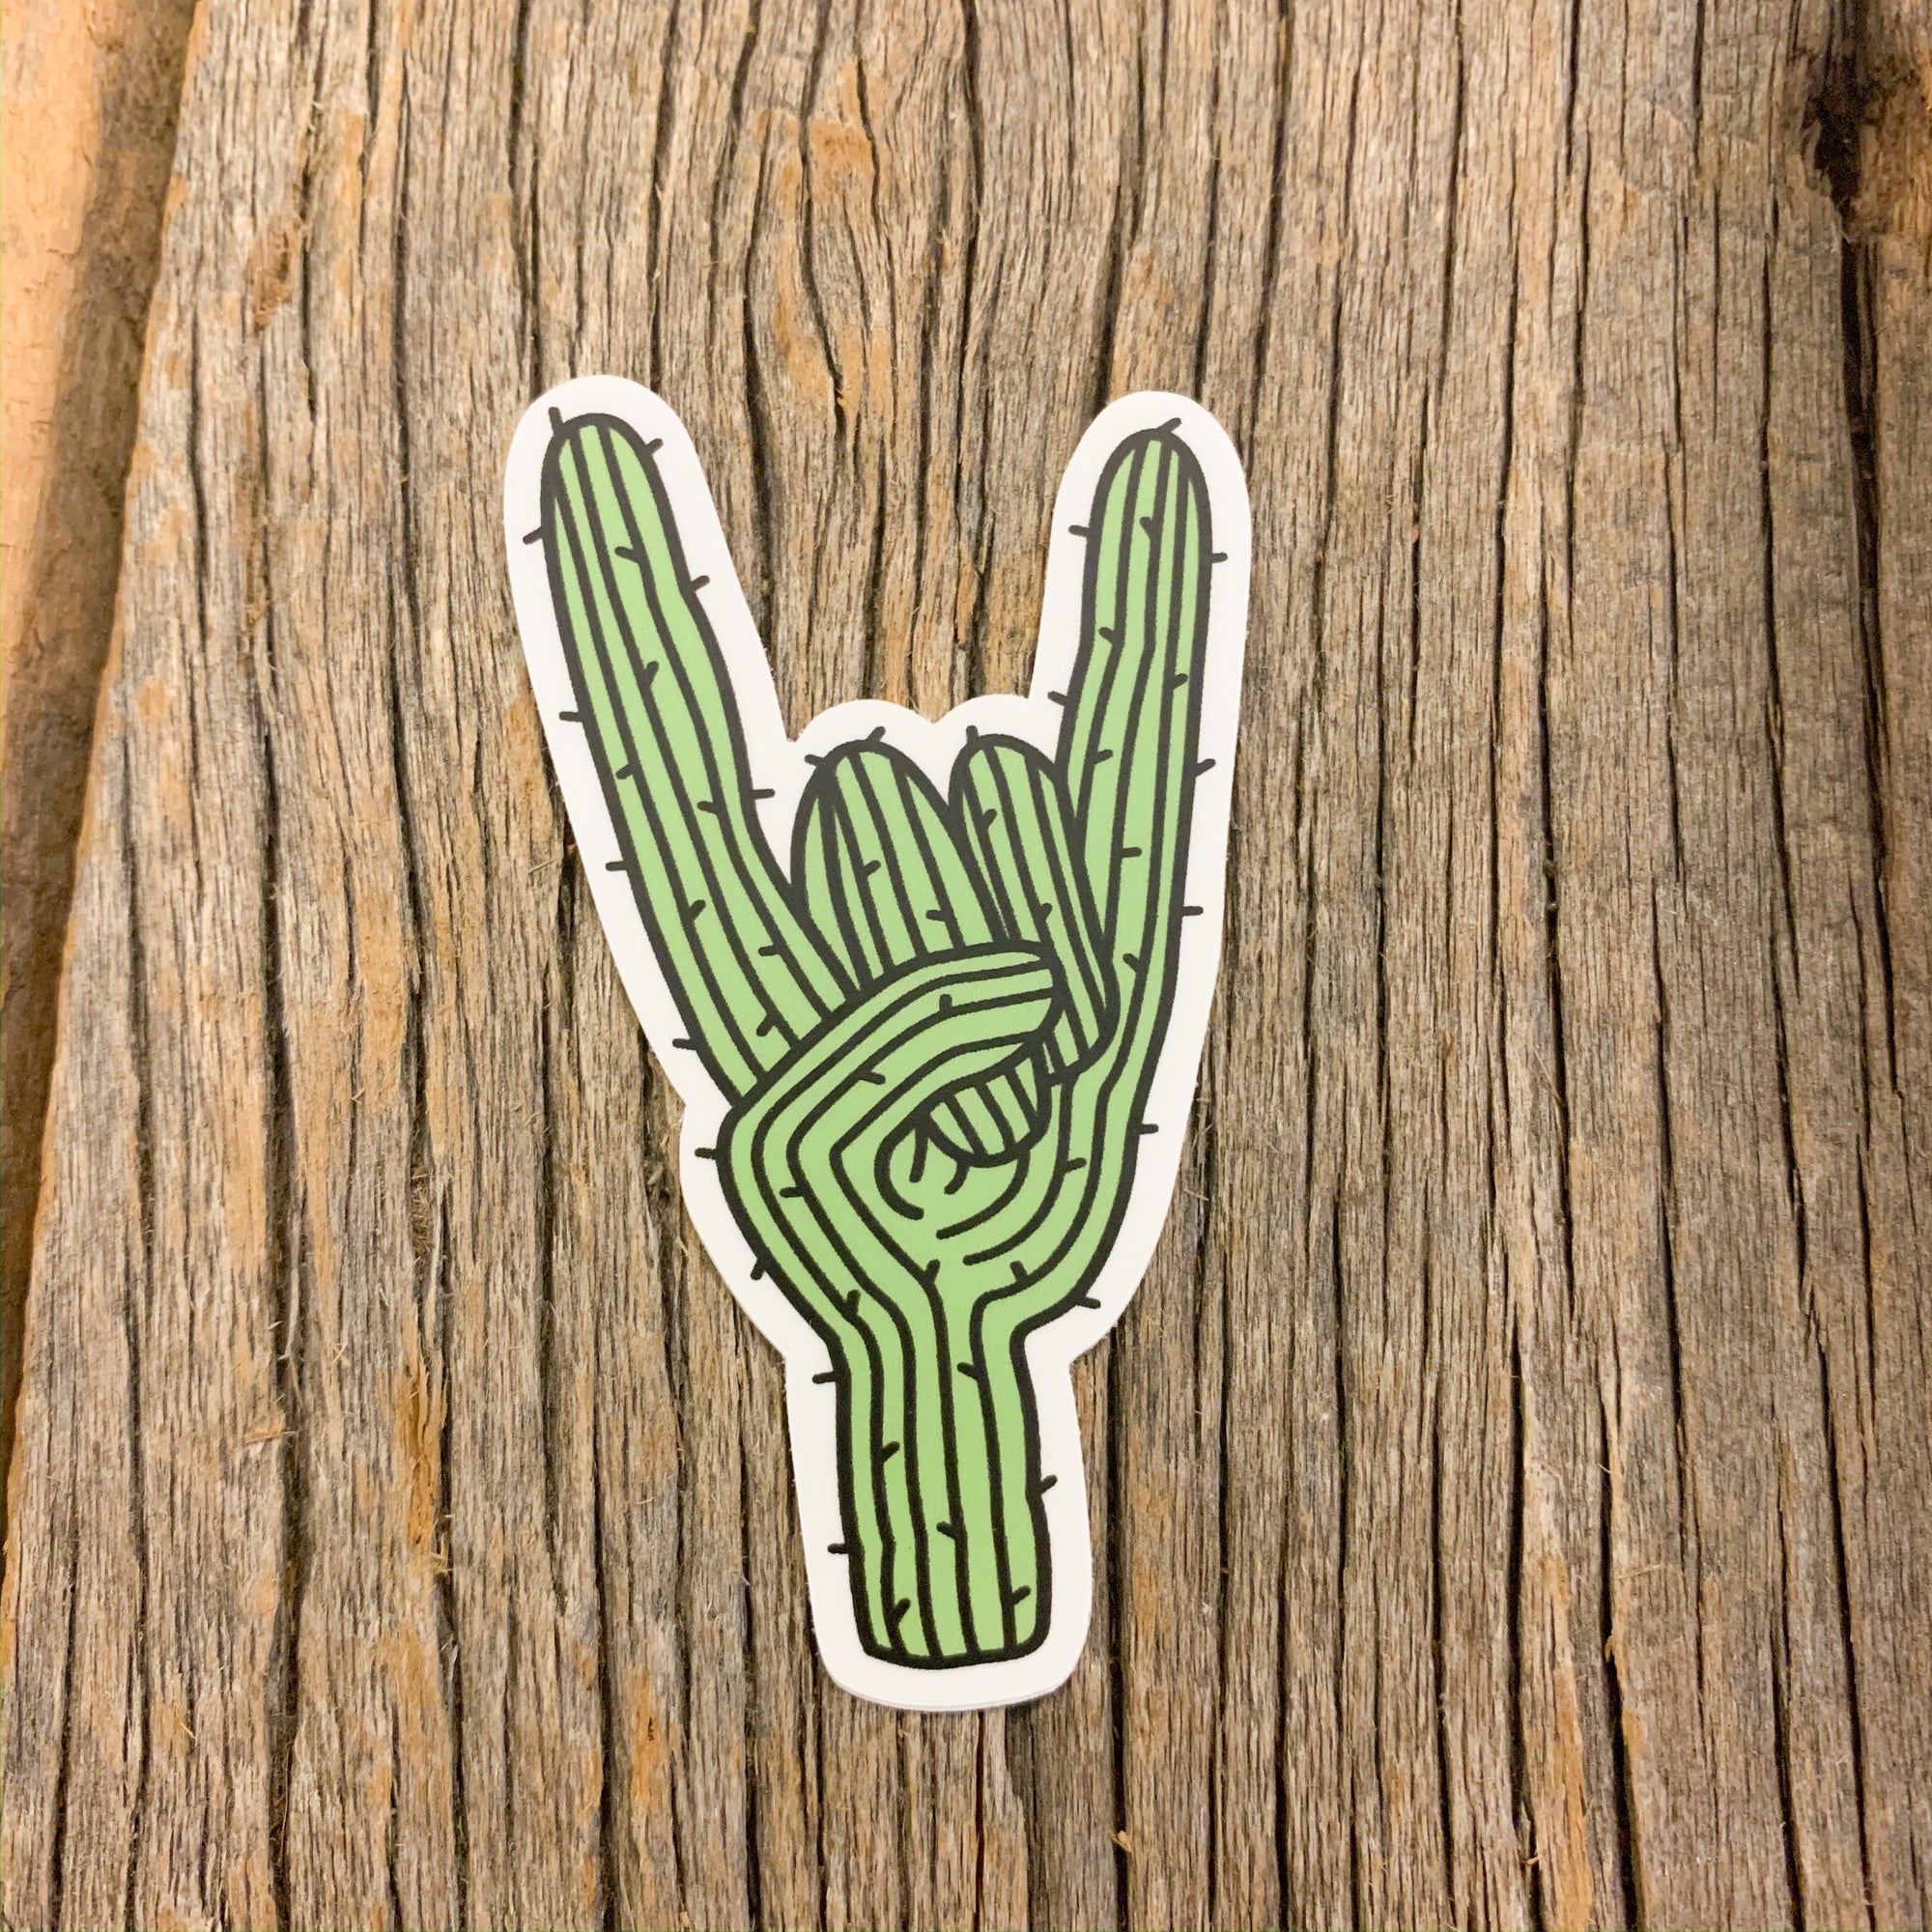 The Rockin' Saguaro Sticker